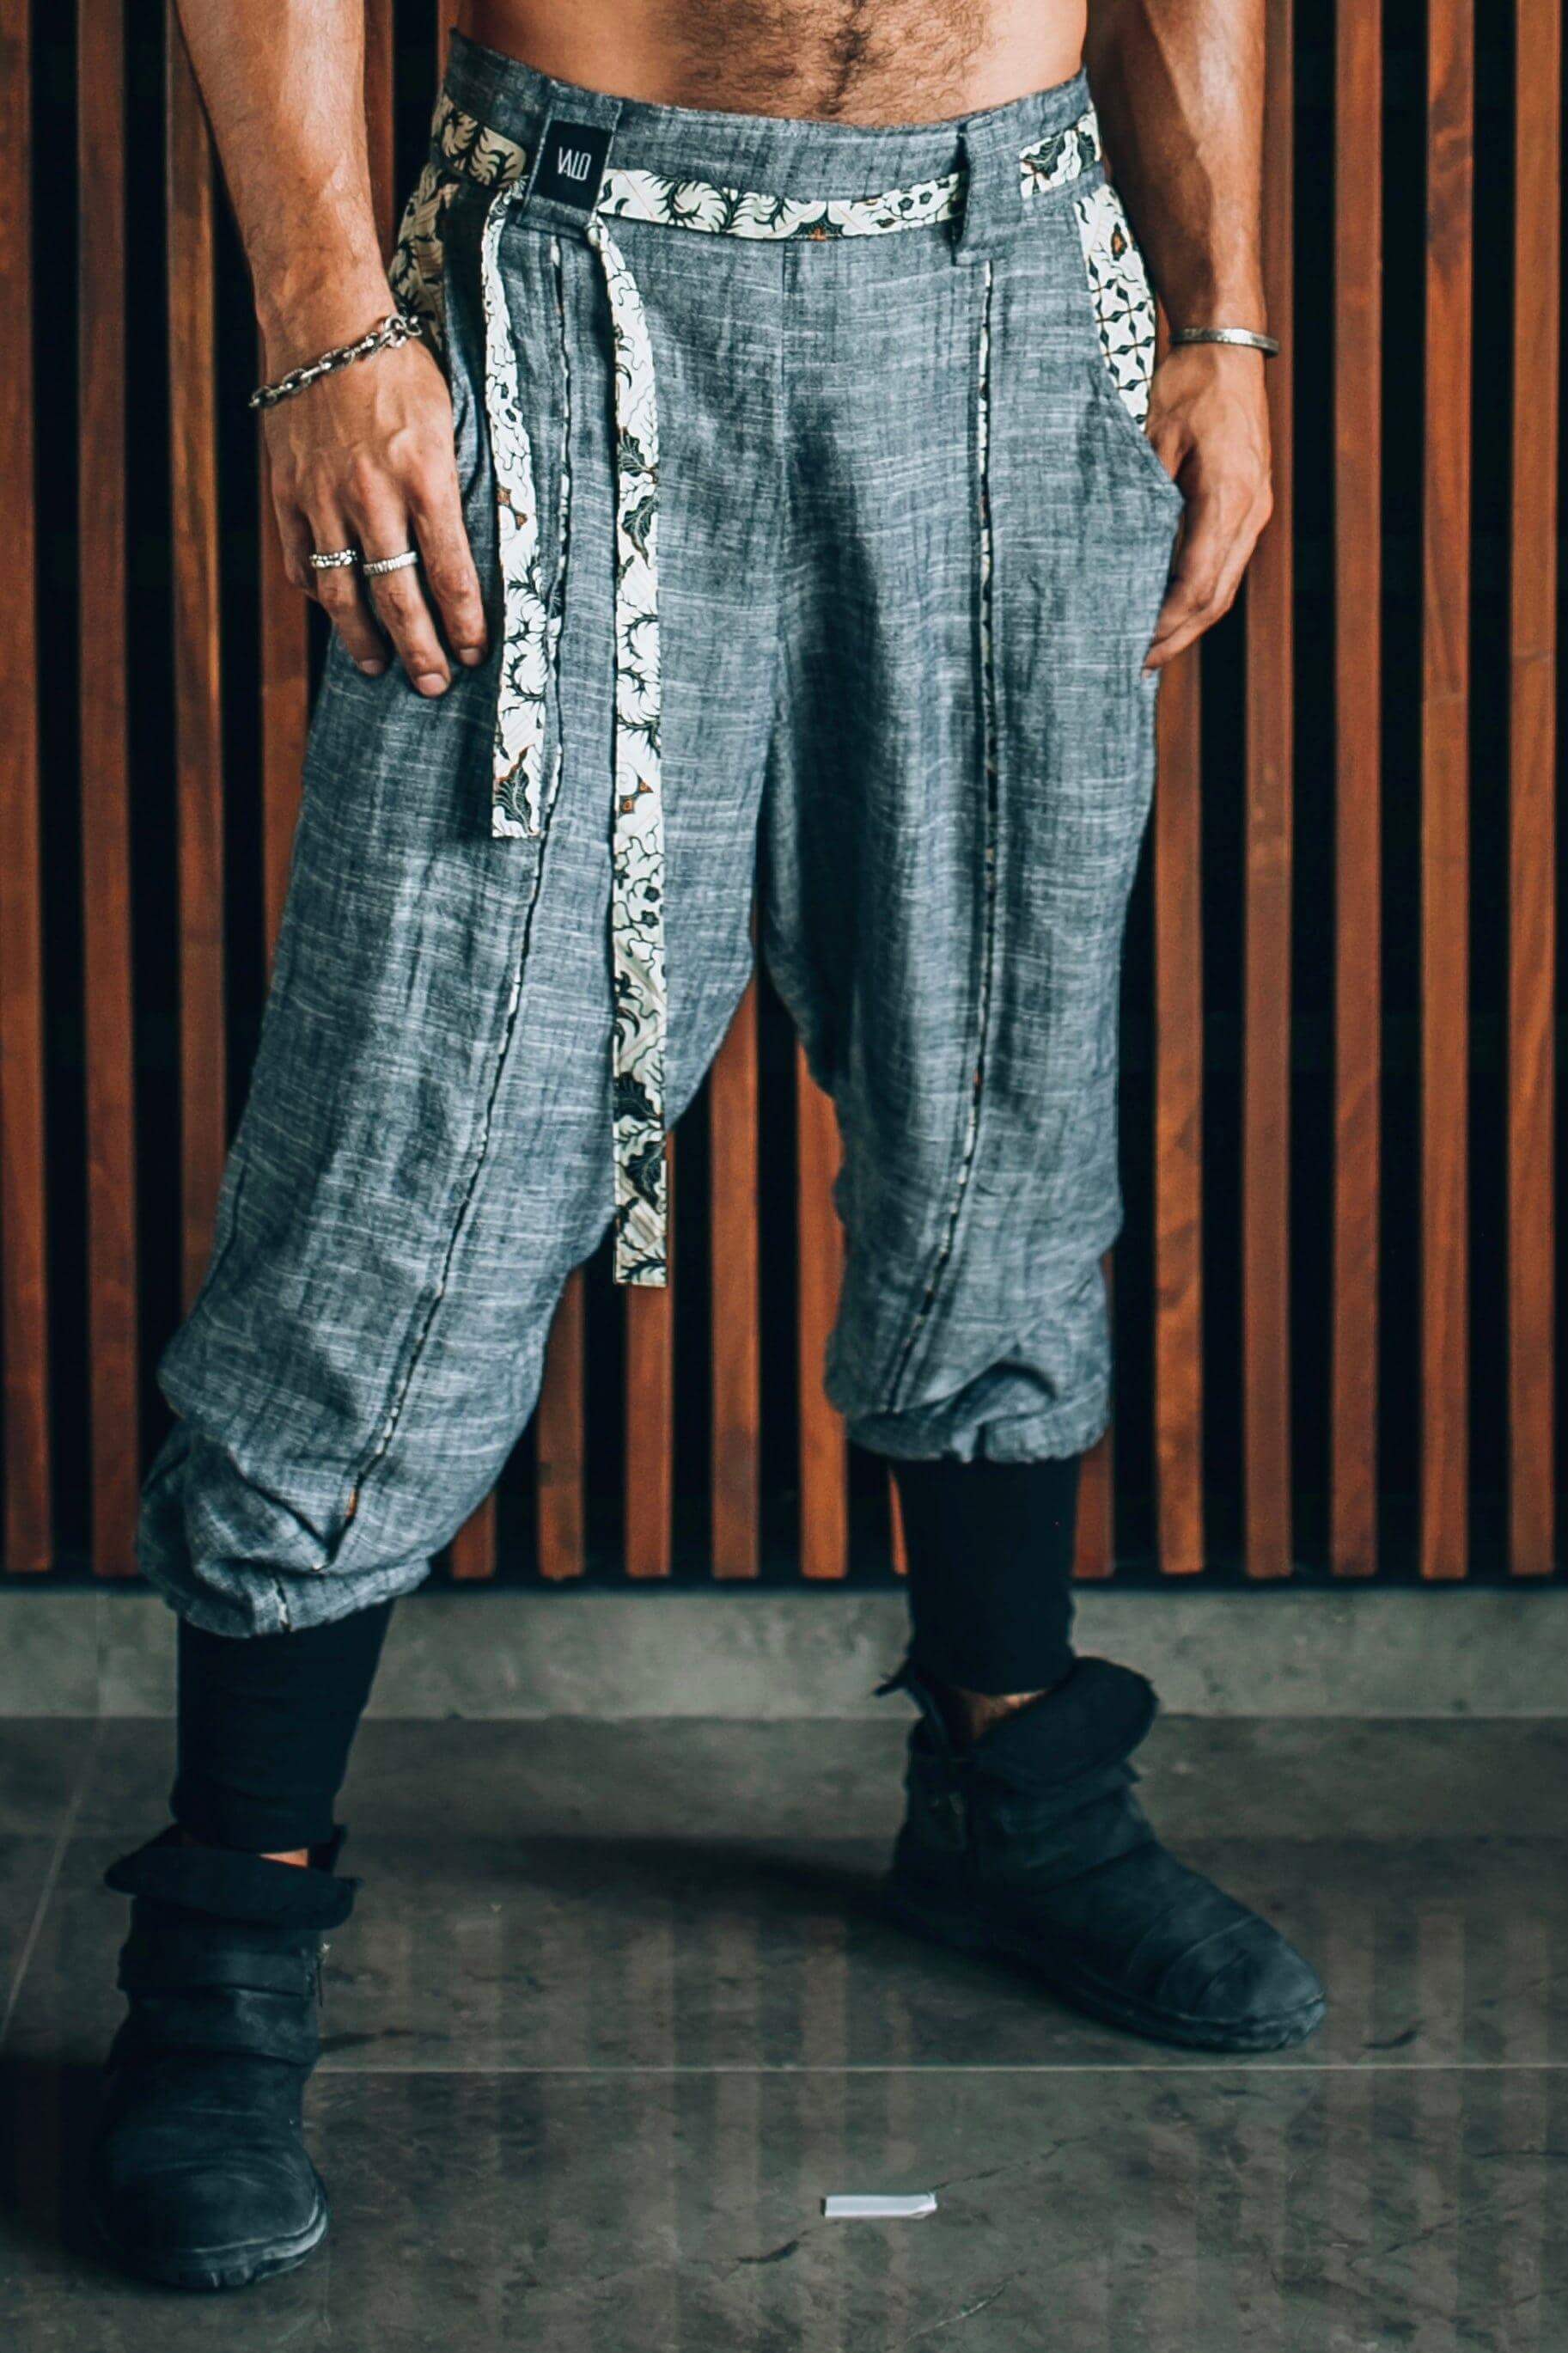 VALO Design Clothing Pants S/M / Pacific Blue Linen QI PANTS - Oriental Drop Crotch Linen Pants